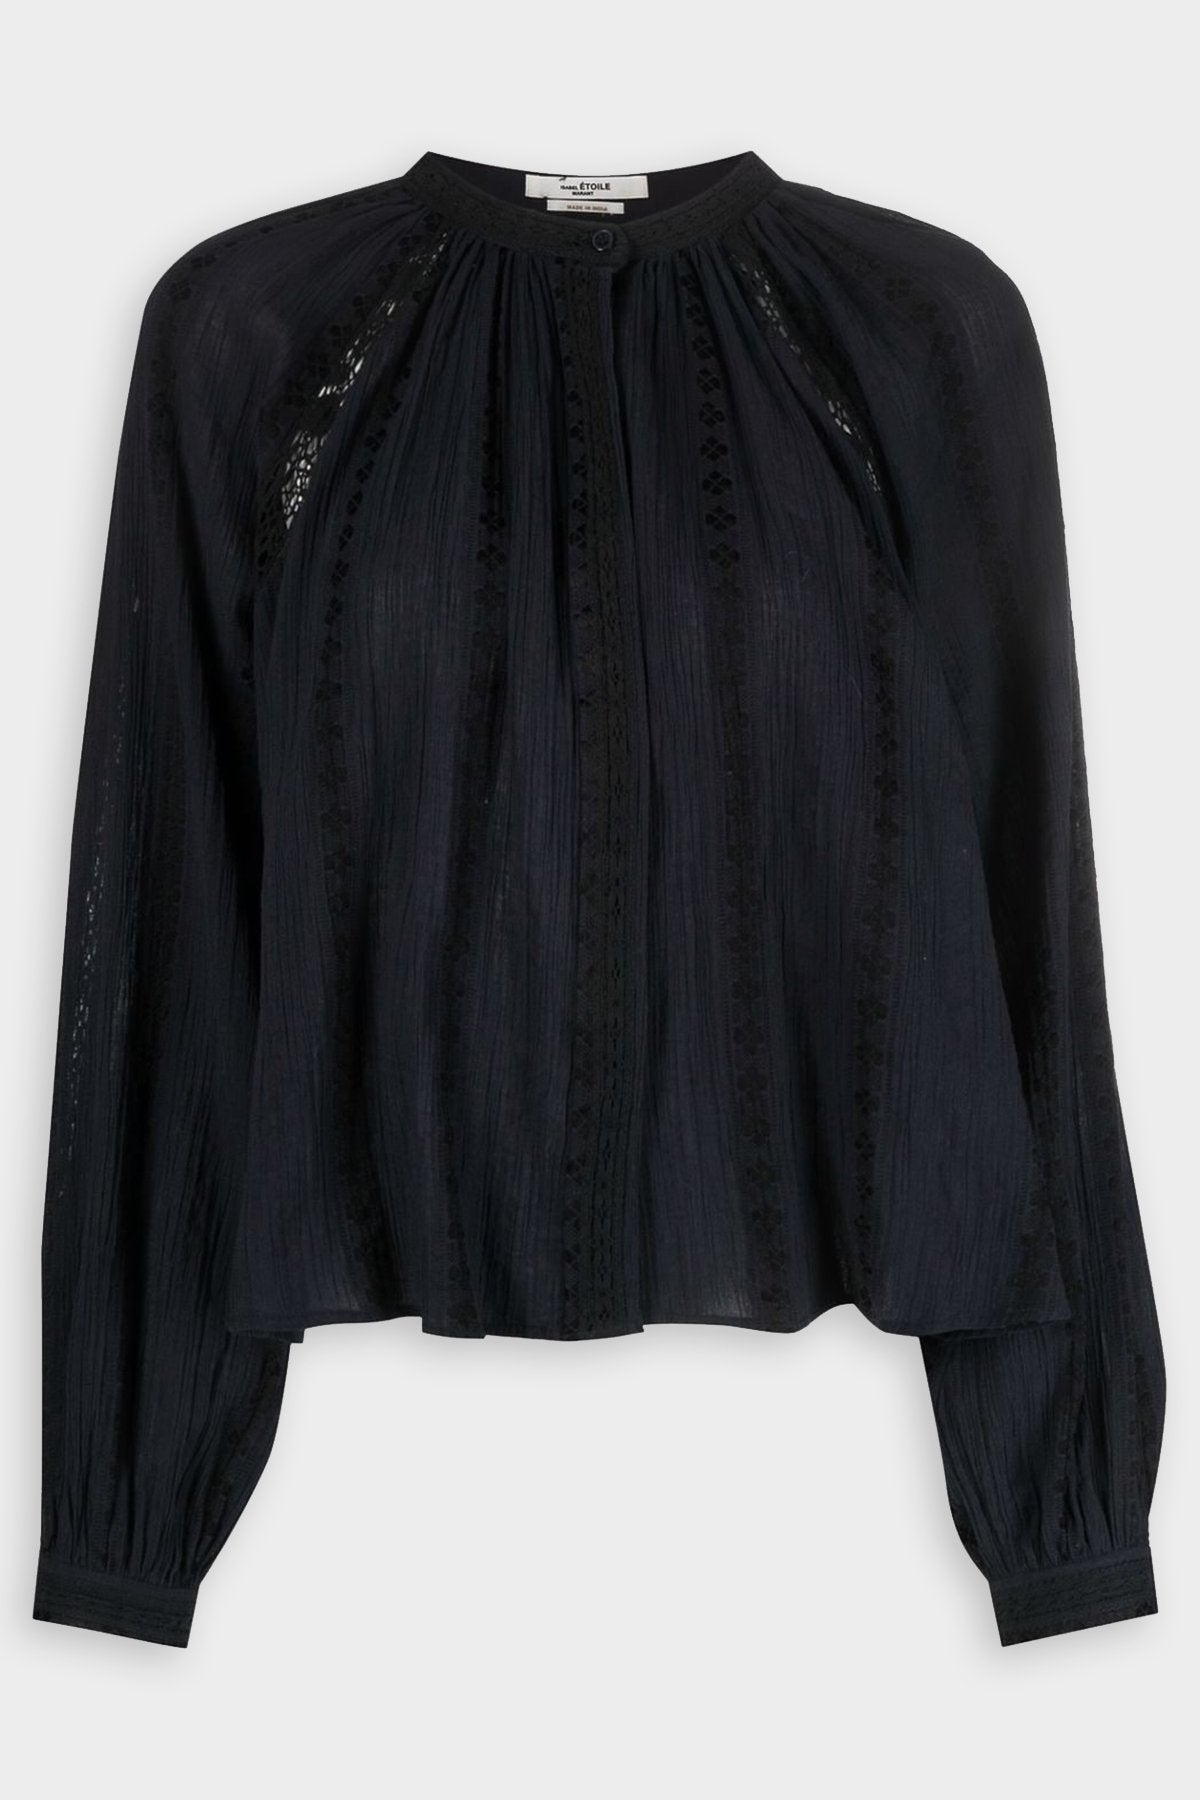 Janelle Shirt in Black - shop-olivia.com